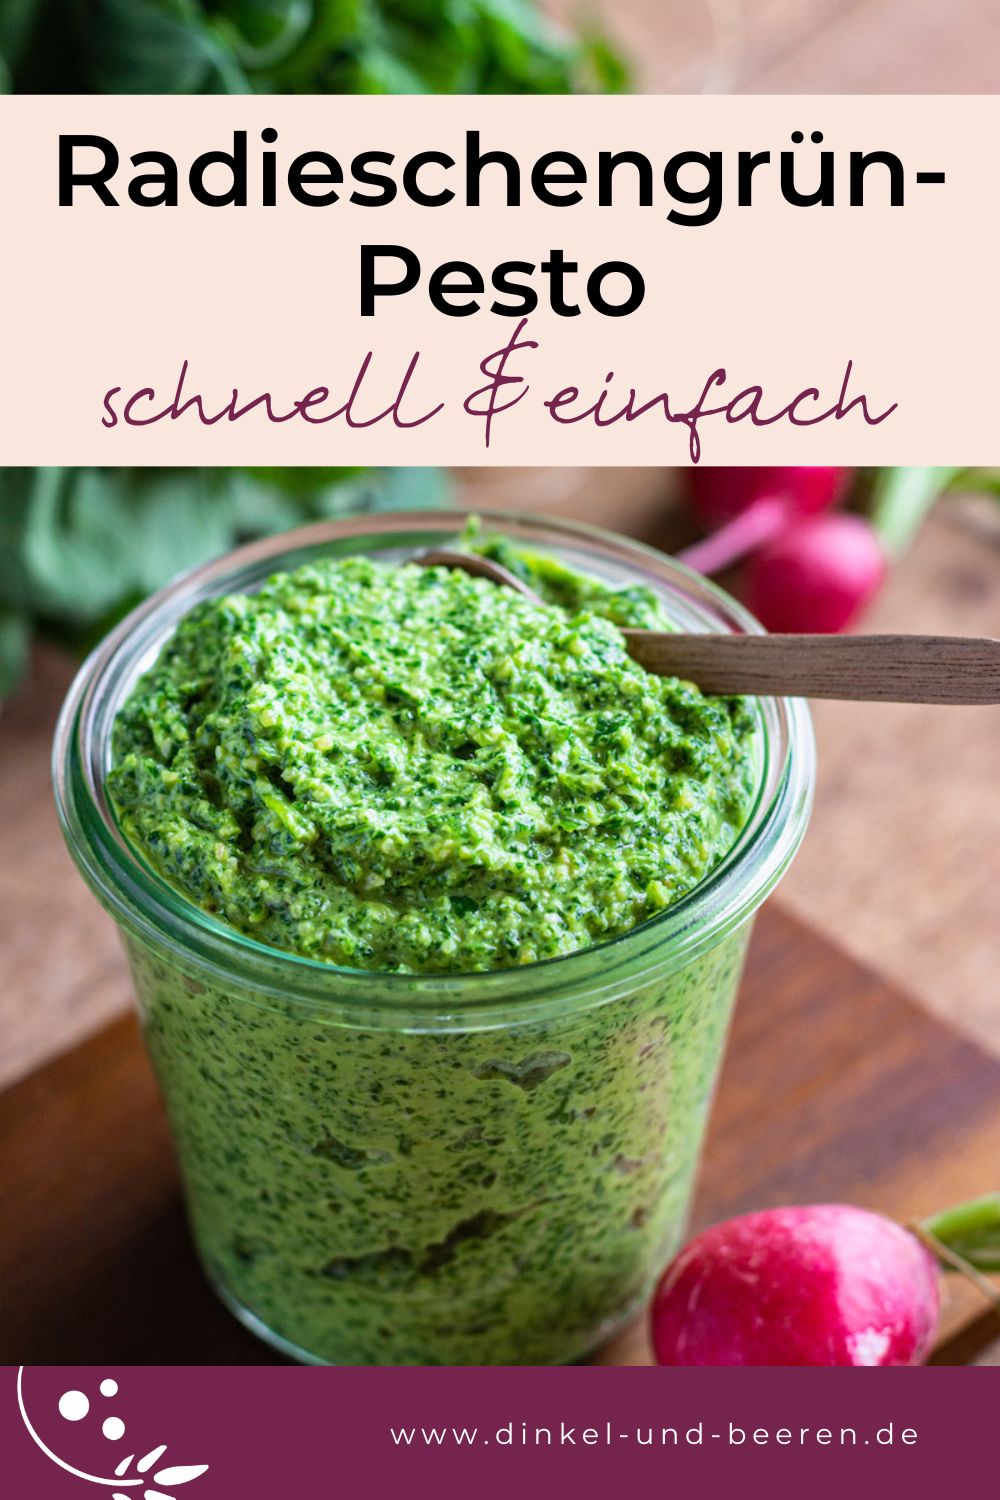 Pinterest-Grafik mit einem Bild des Radieschen-Pestos in einem Glas serviert, darüber ein rosa Kasten mit dem Schriftzug "Radieschengrün-Pesto, schnell & einfach".